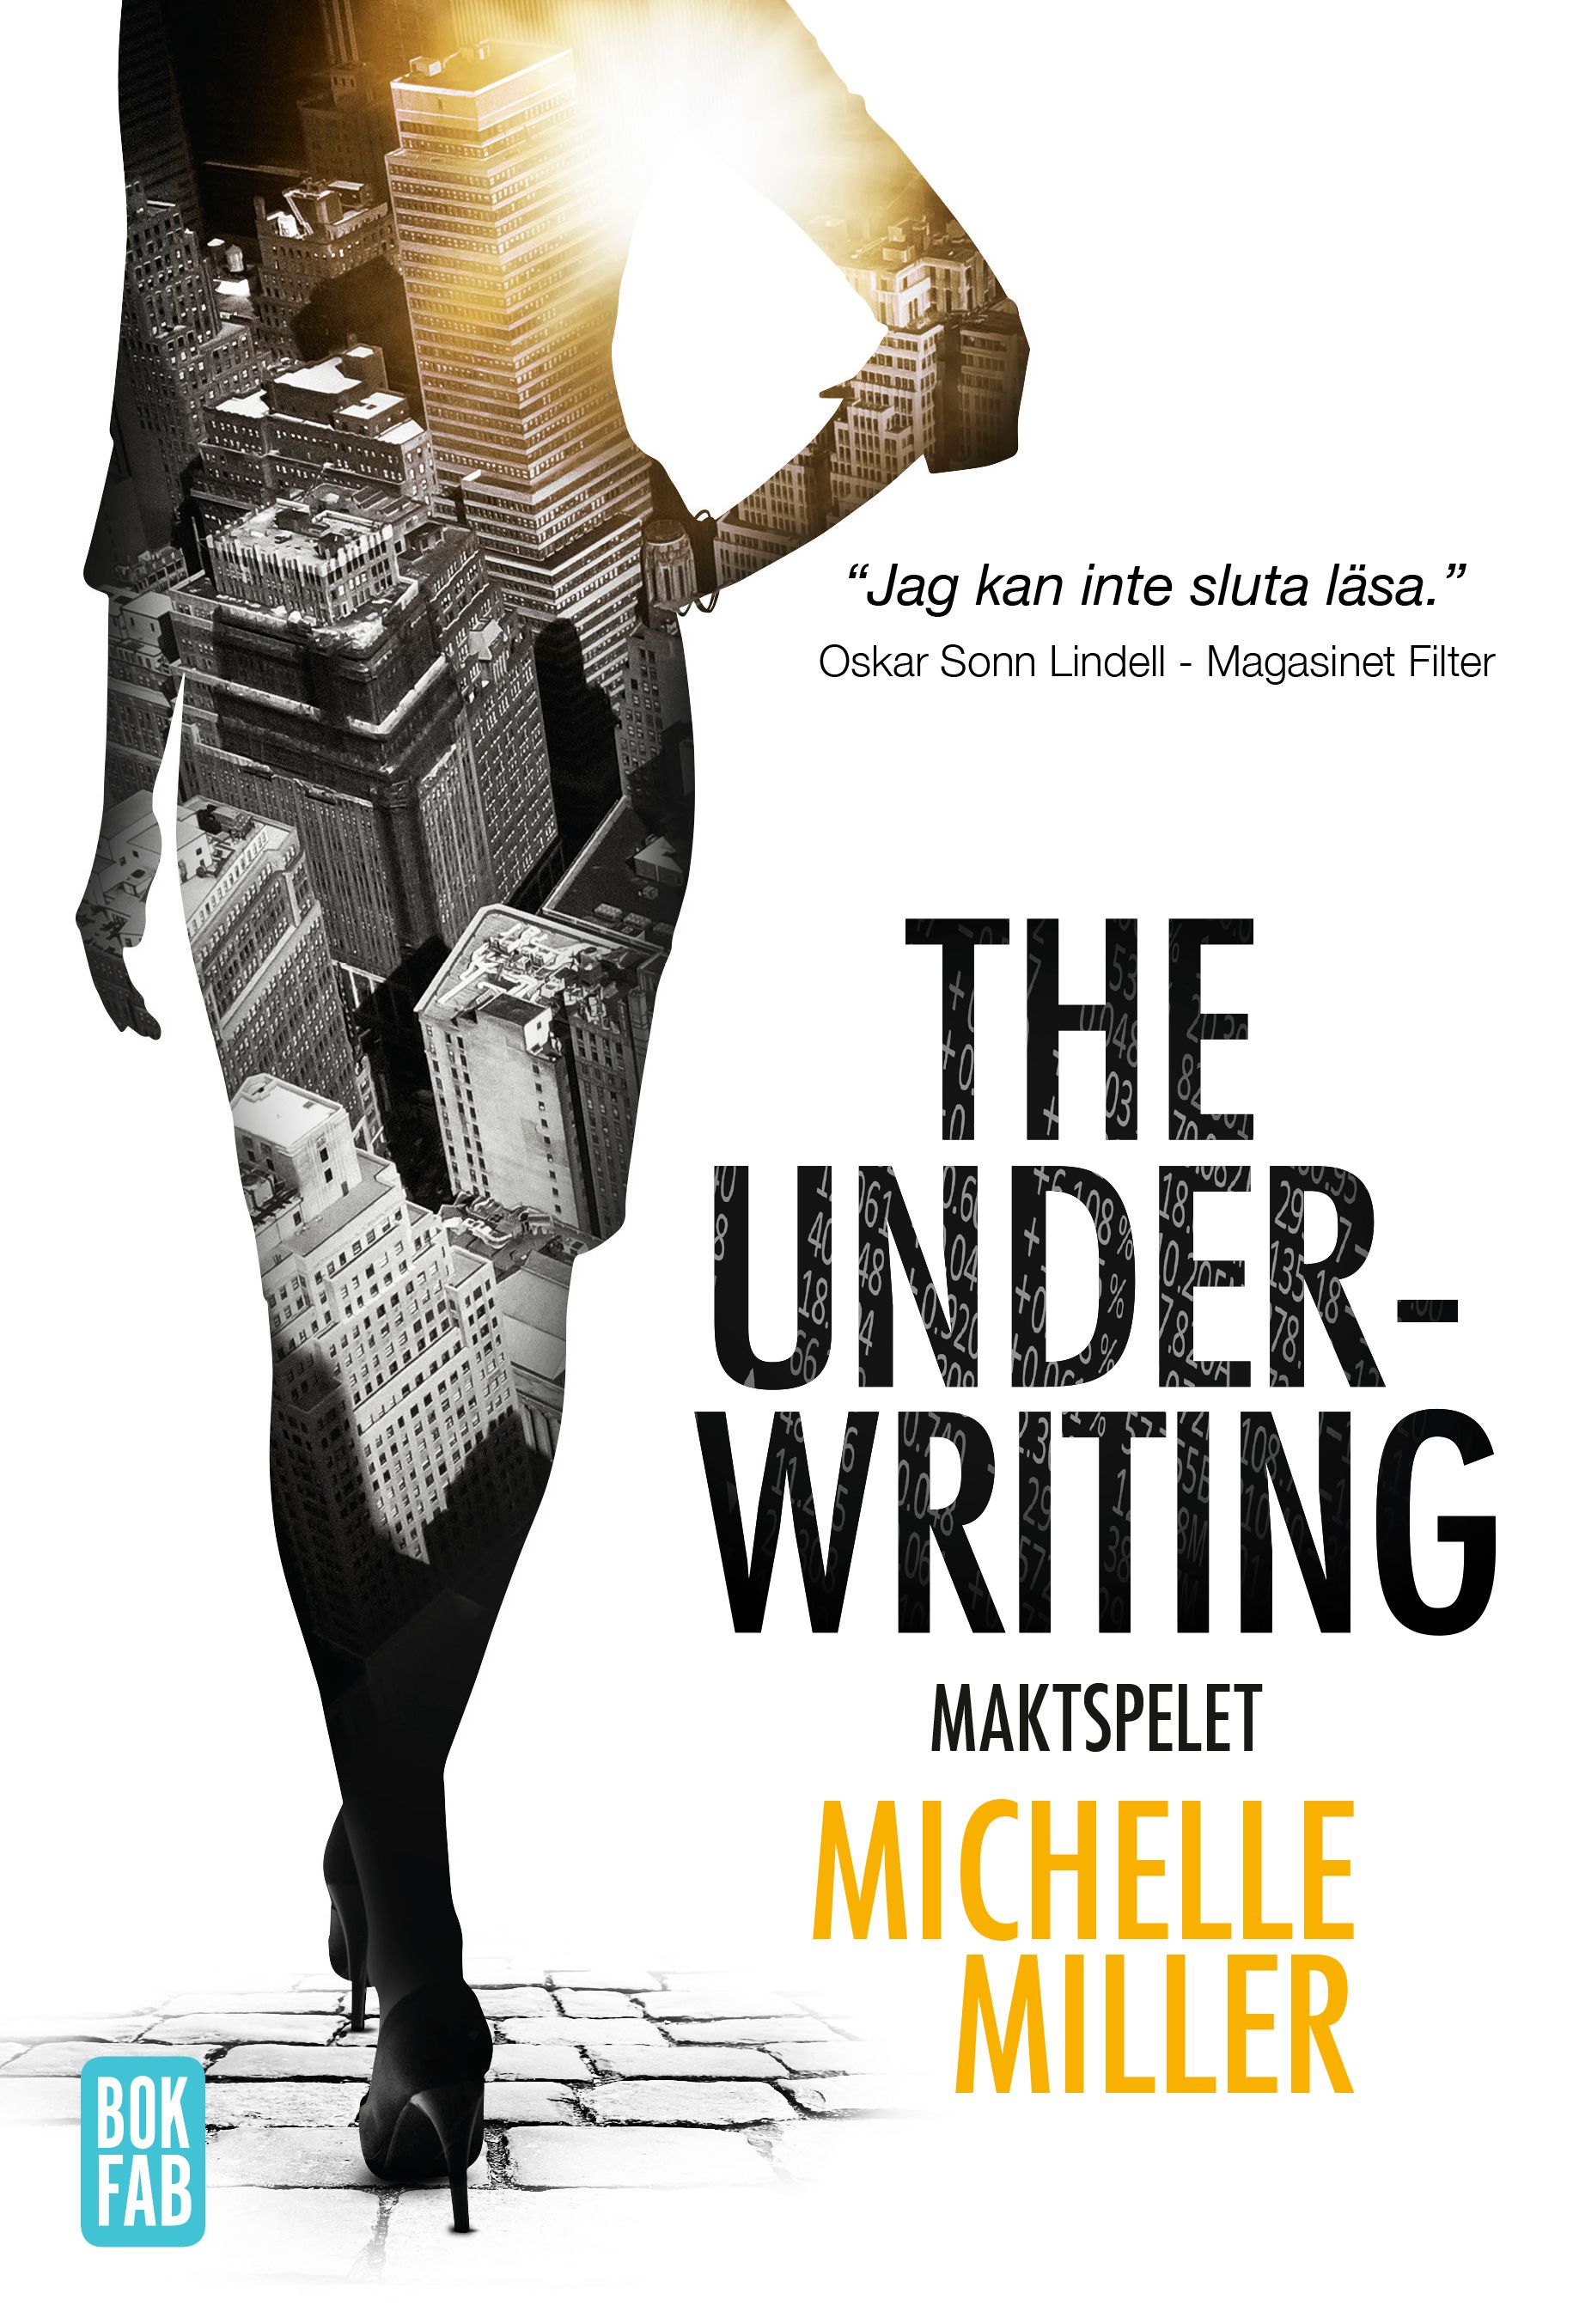 The Underwriting : Maktspelet, e-bog af Michelle Miller